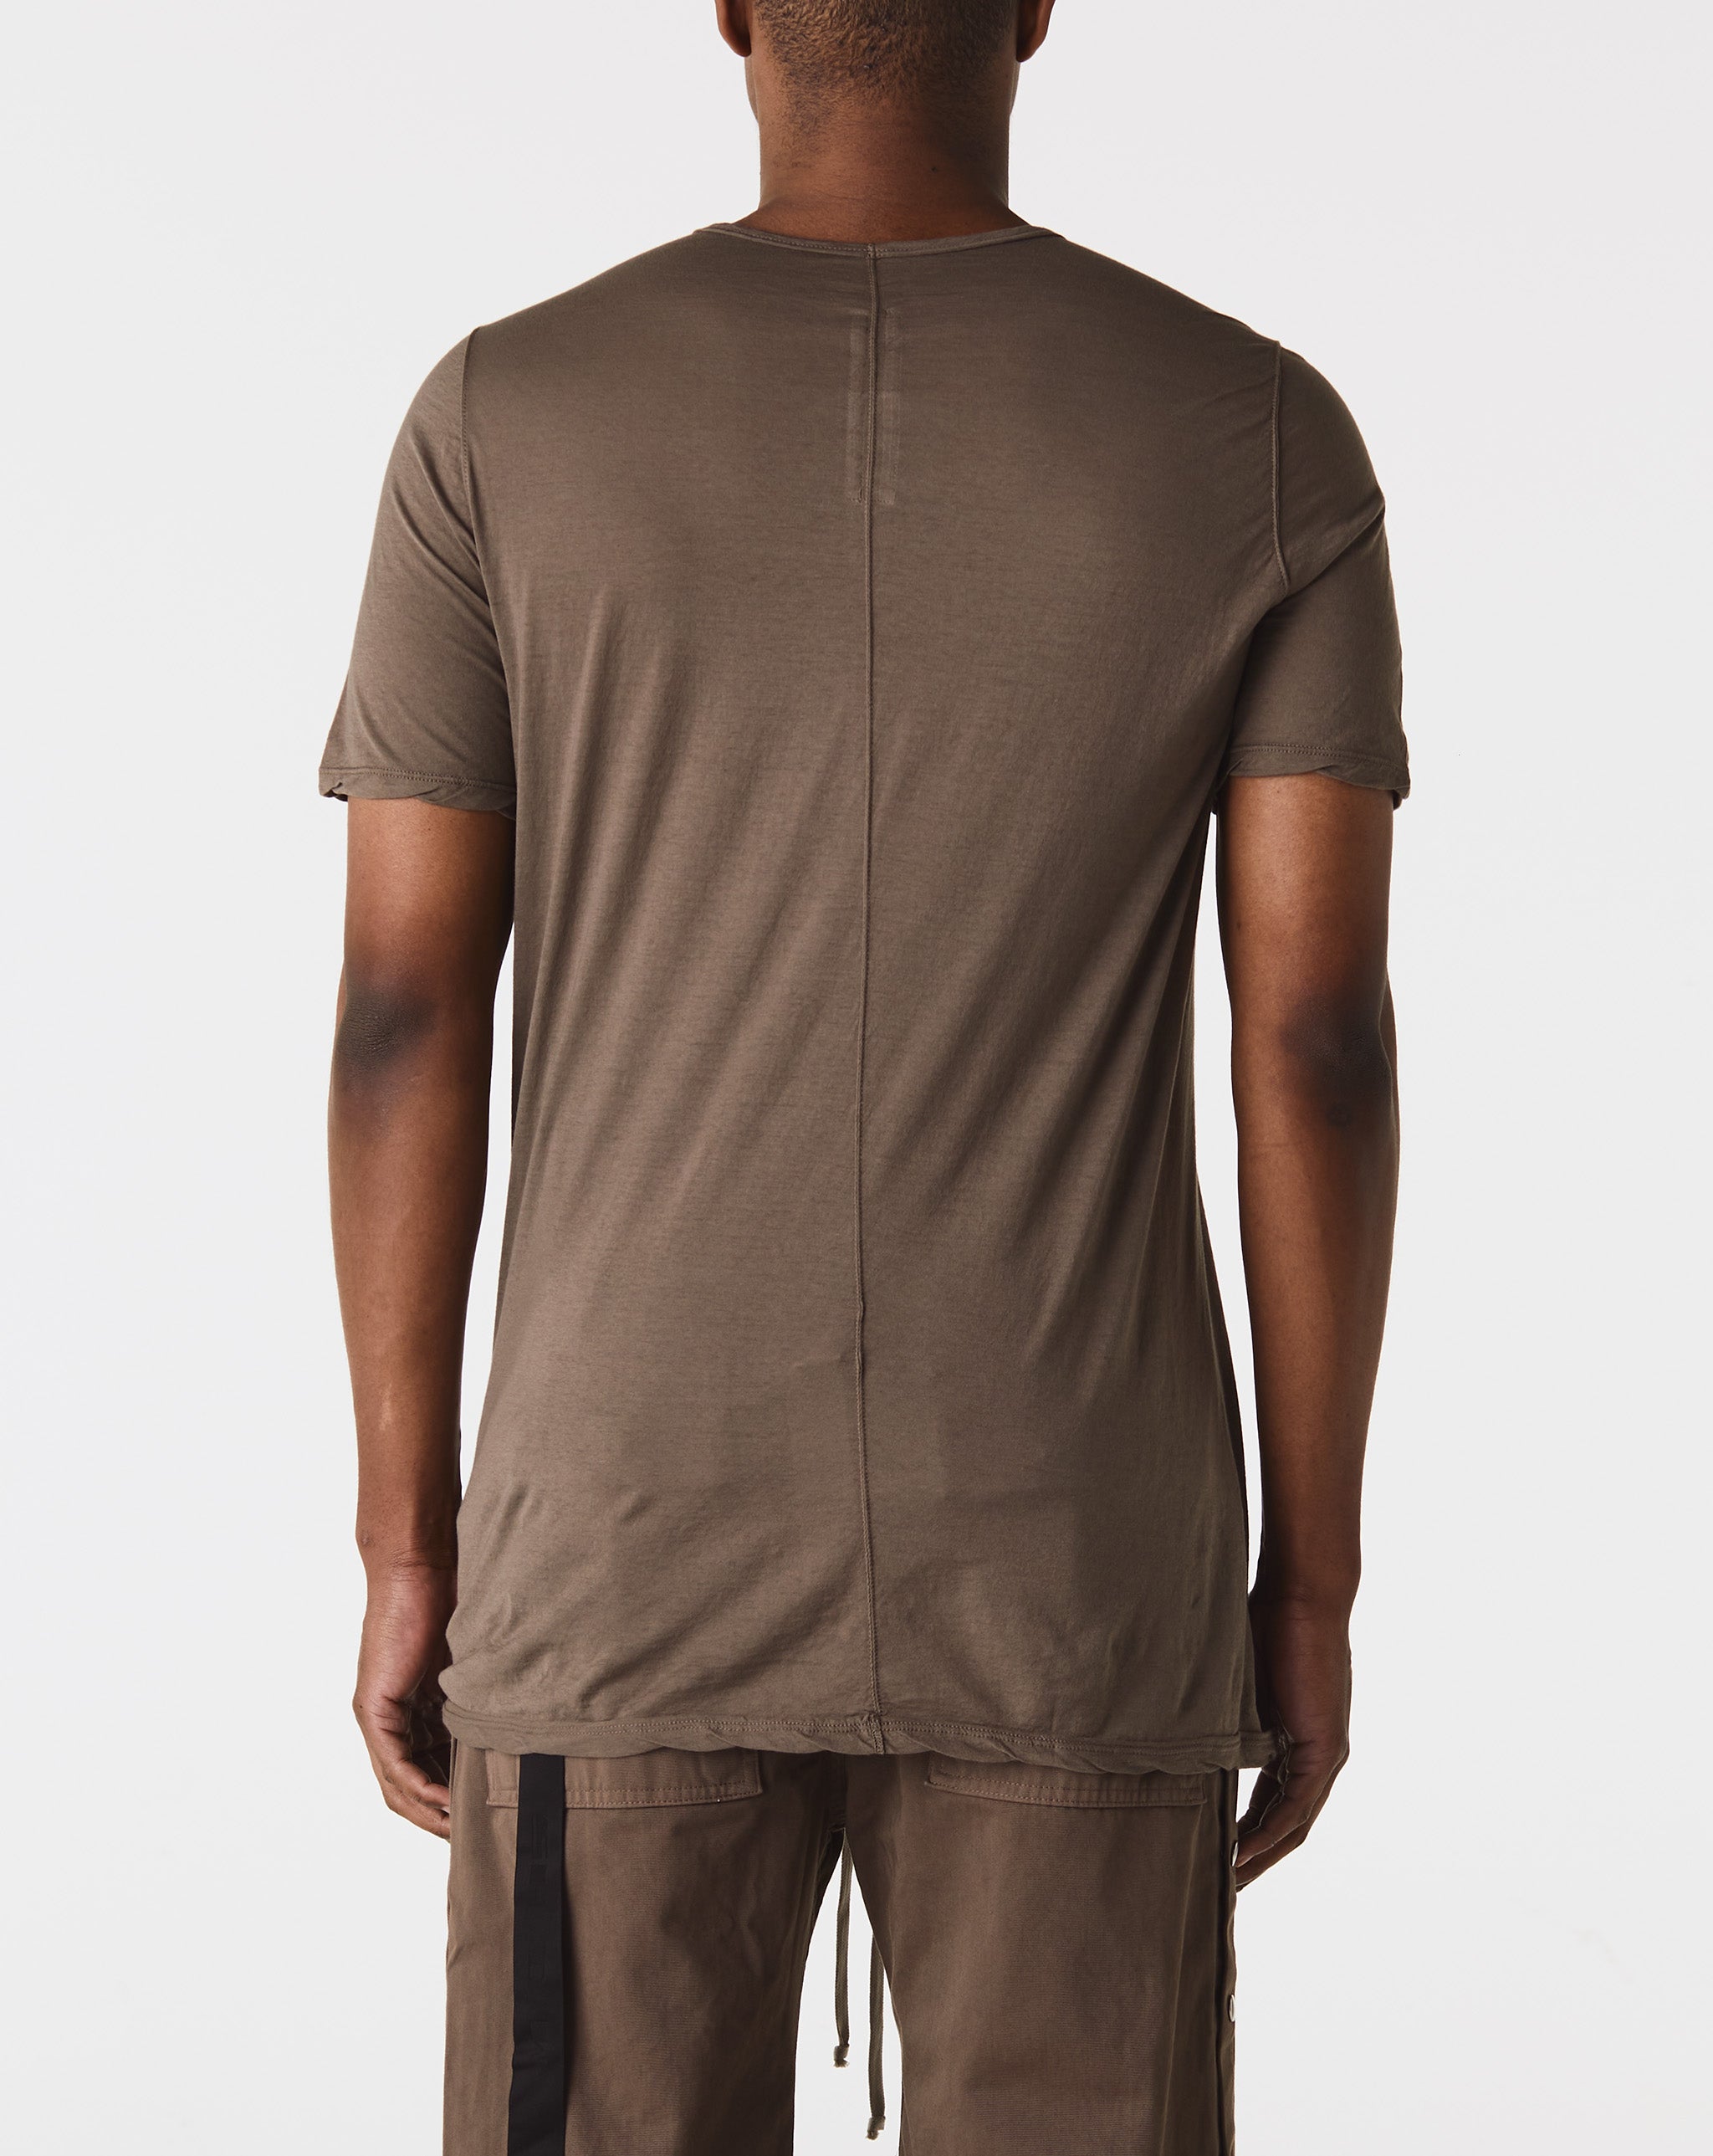 Camo Painter Pants Level T-Shirt  - Cheap 127-0 Jordan outlet